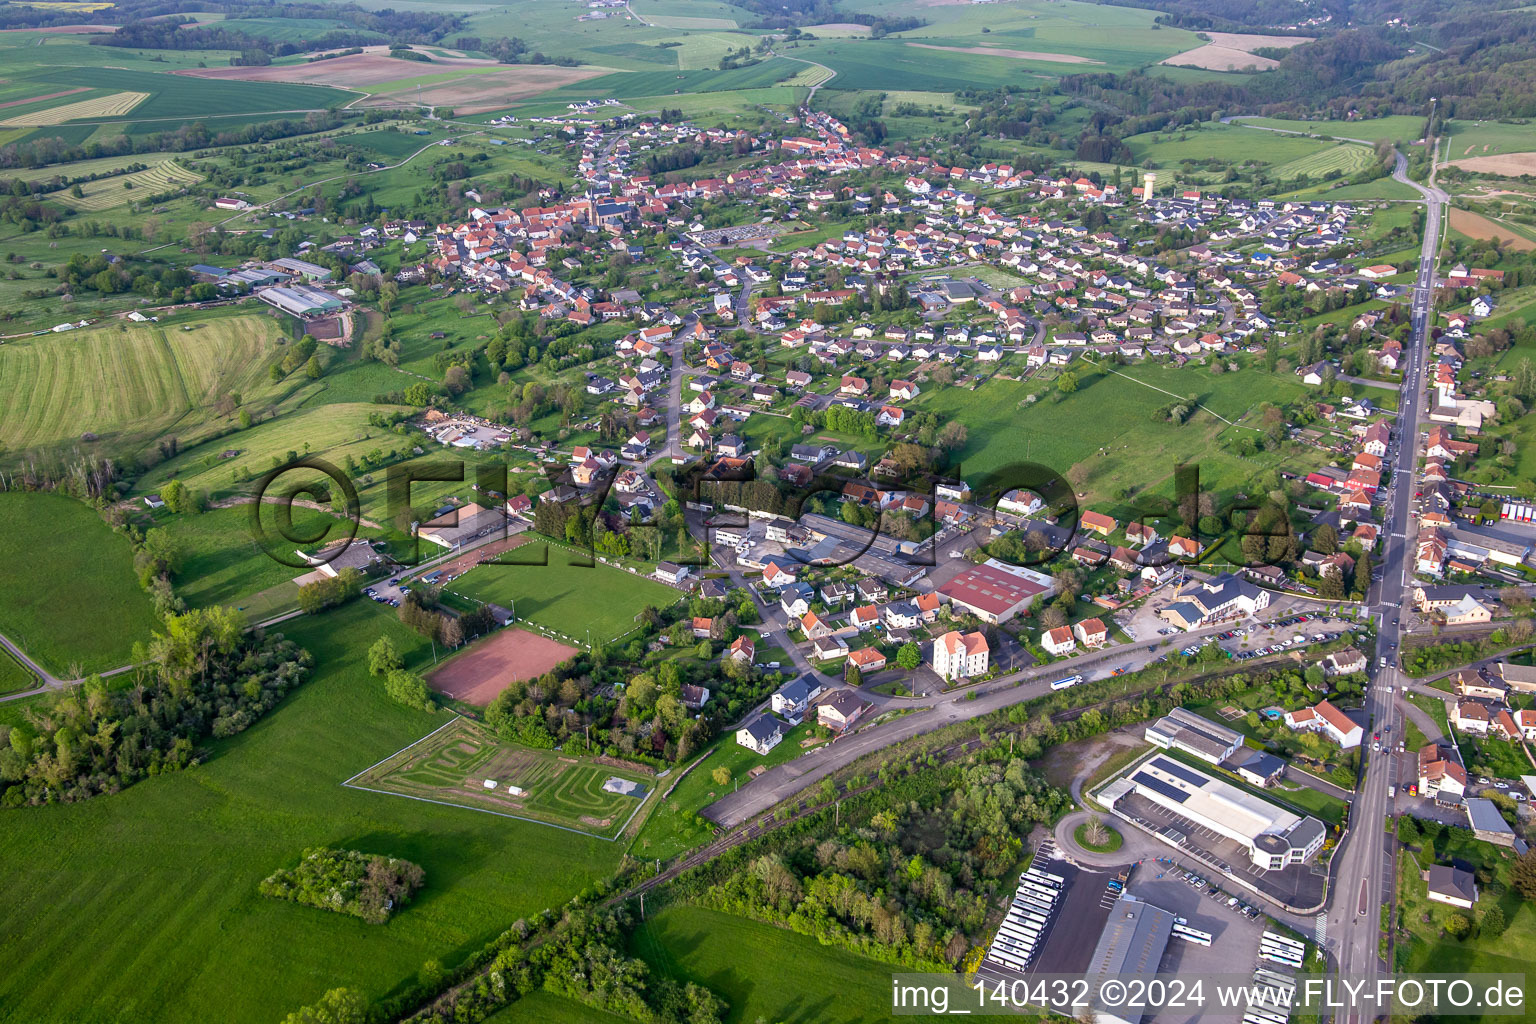 Vue aérienne de De l'ouest à Petit-Réderching dans le département Moselle, France